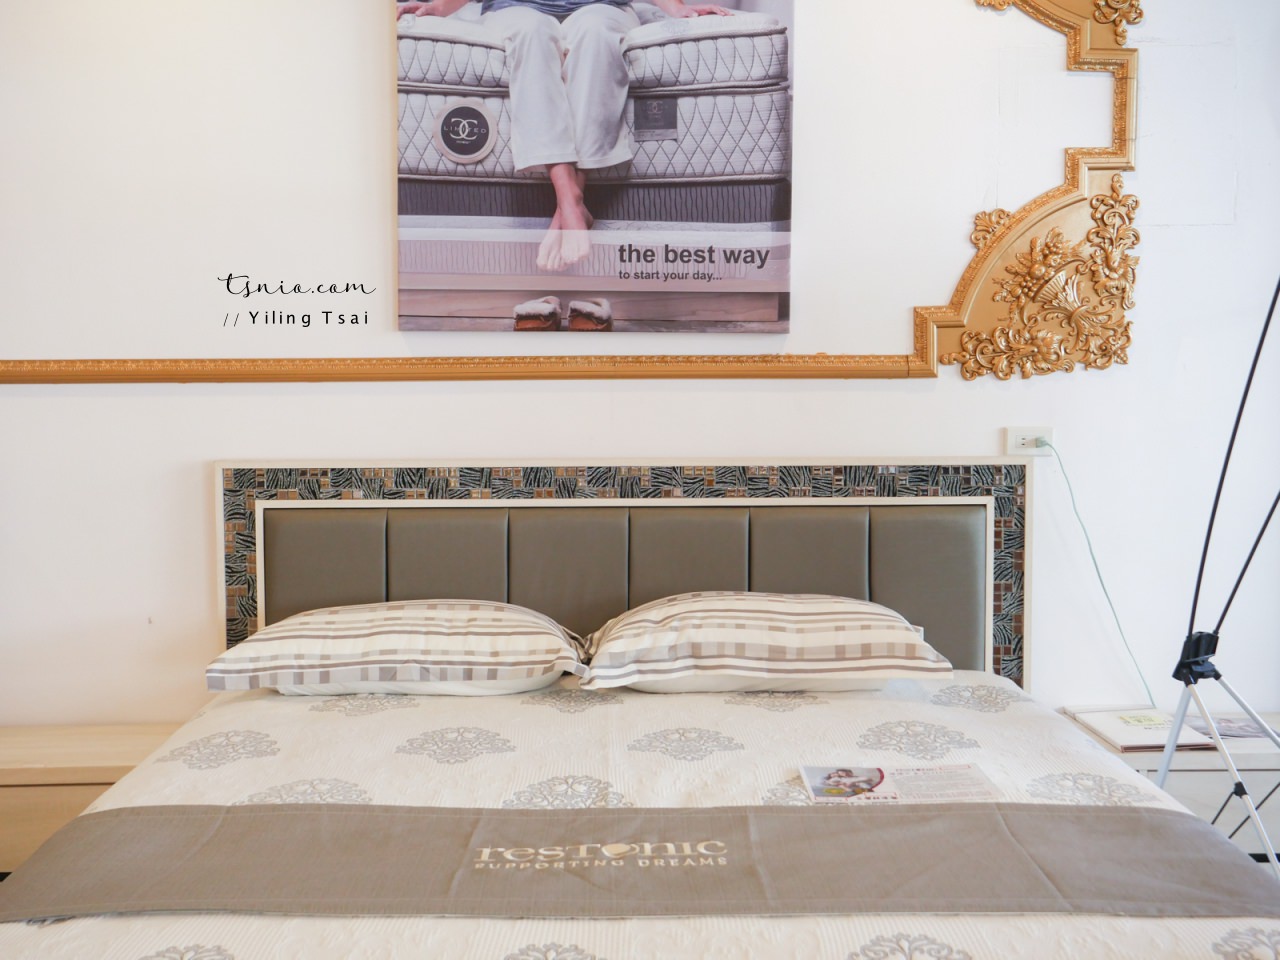 美國蕾絲床墊 Restonic 五星級飯店指定使用床墊品牌